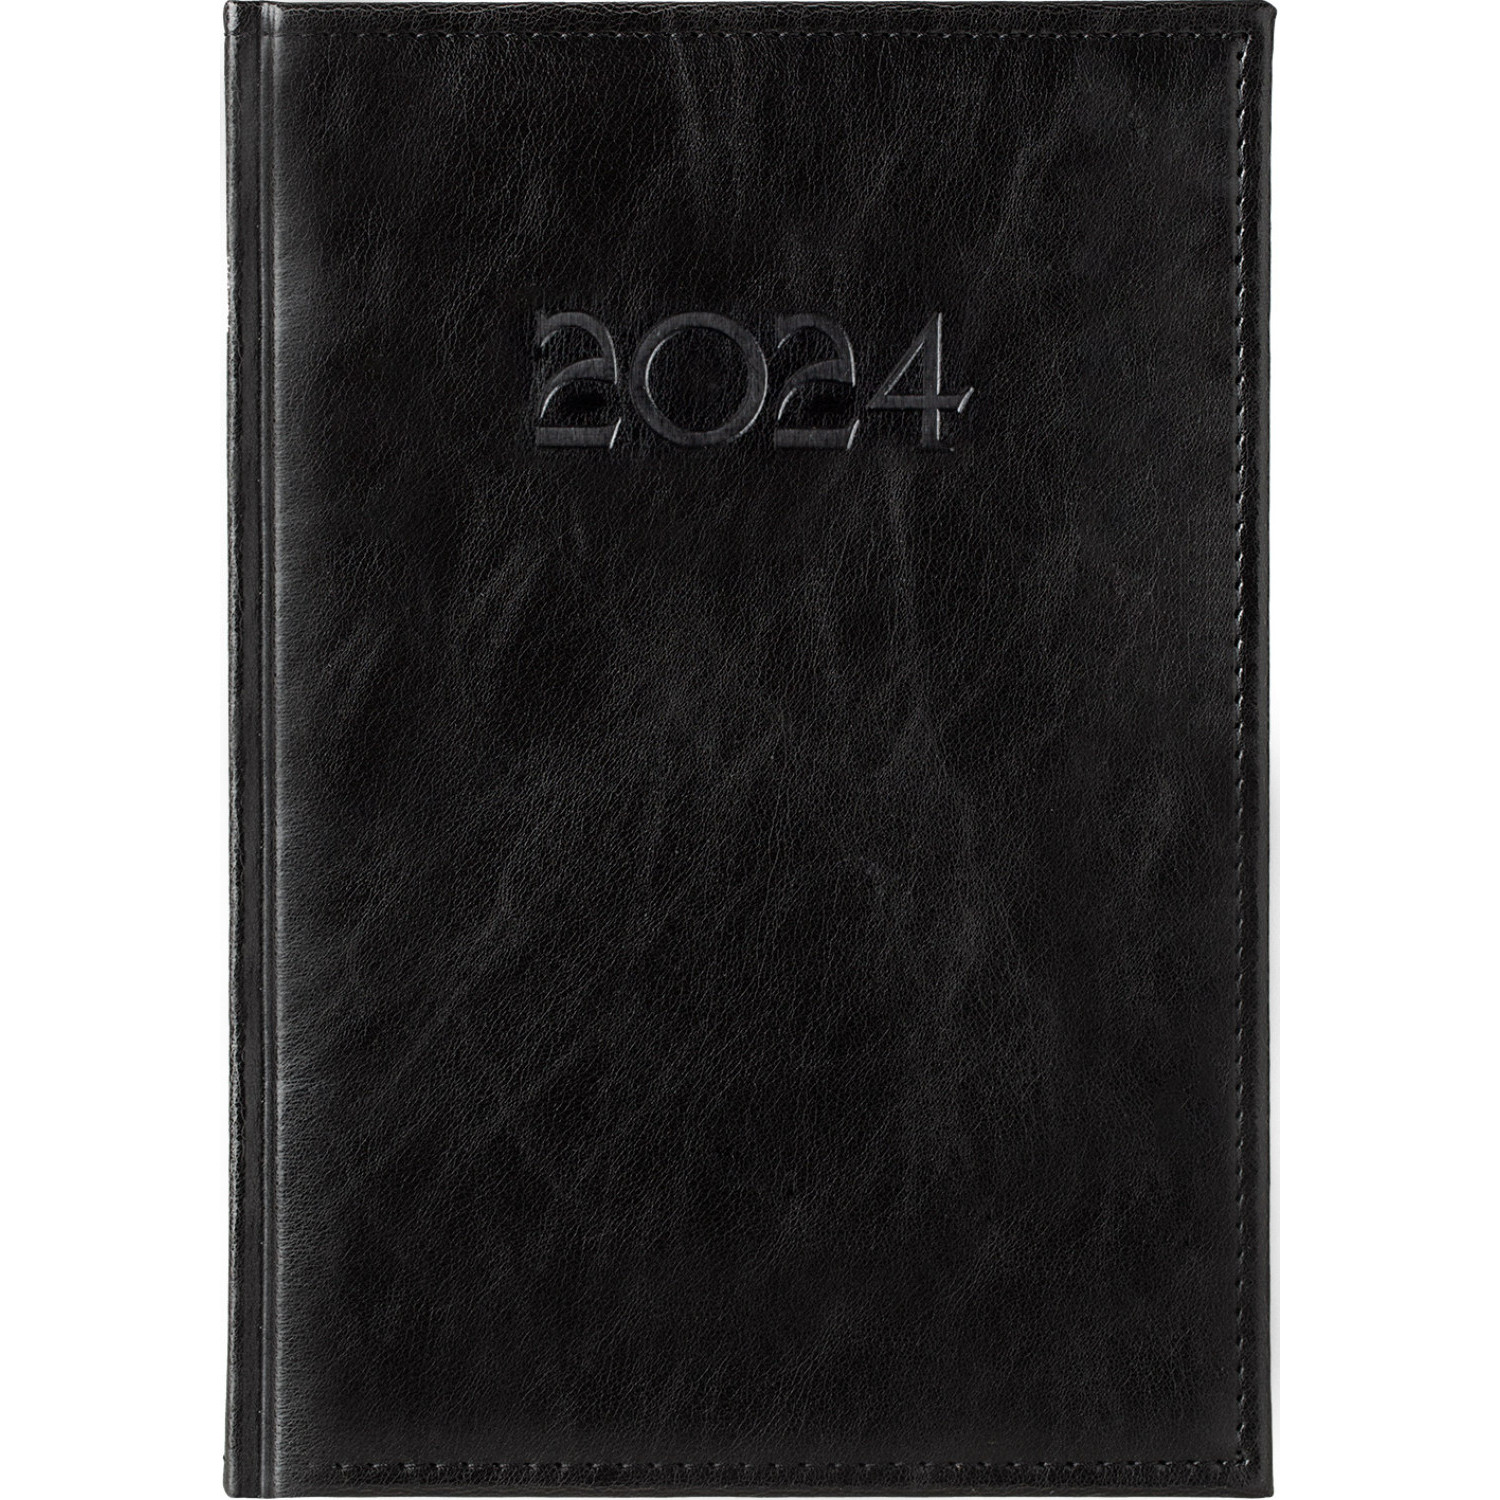 Календар бележник Вихрен, черен